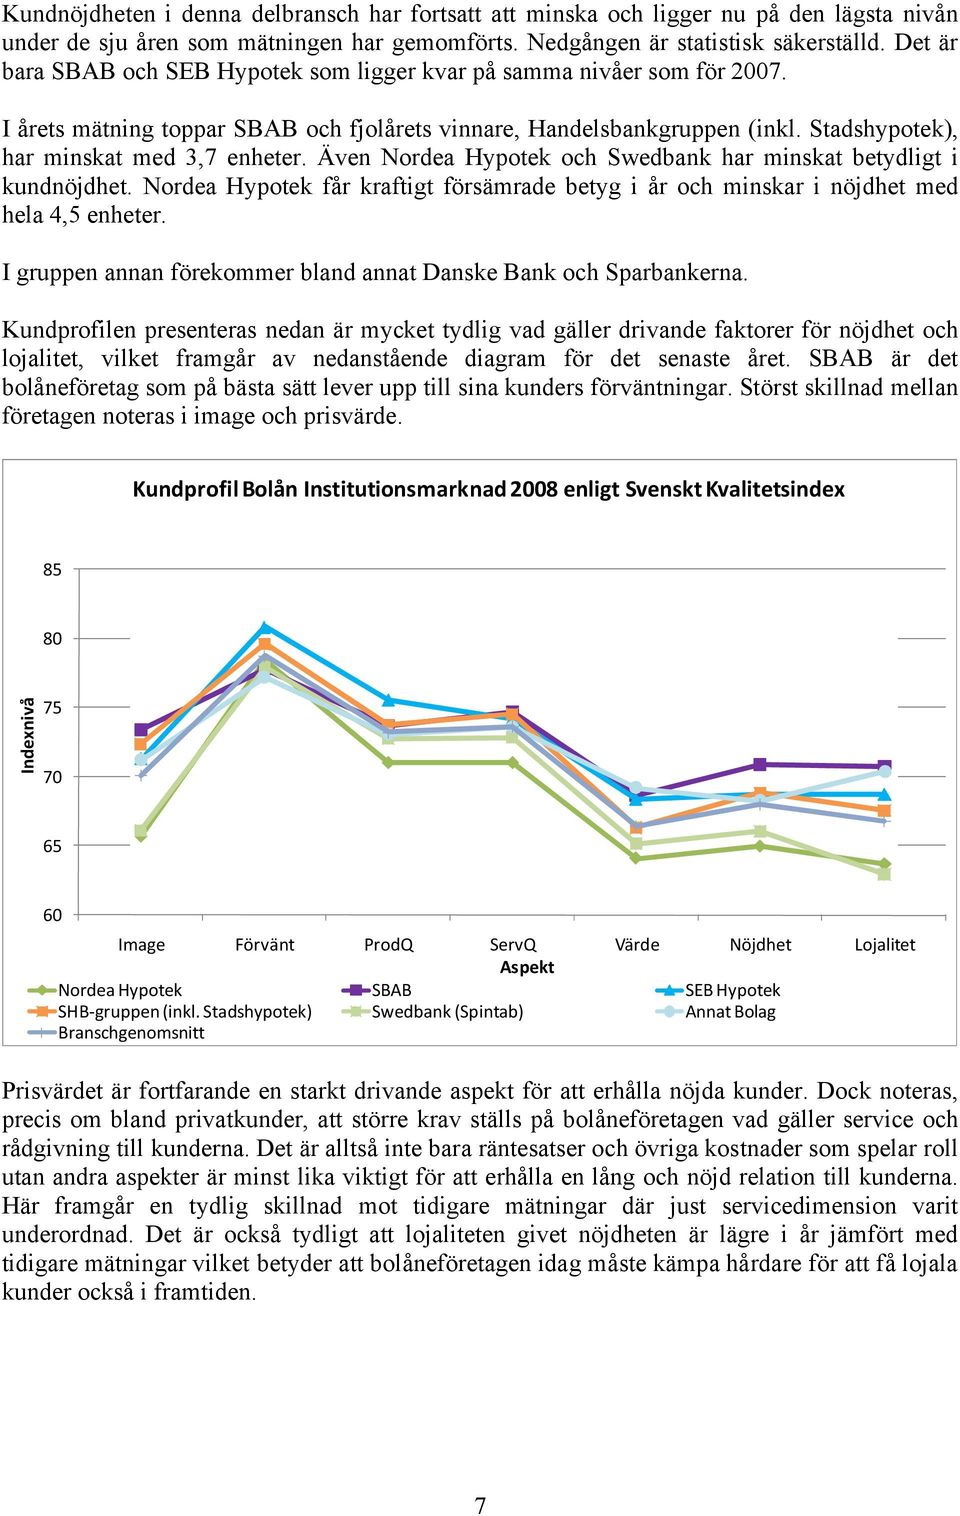 Även Nordea Hypotek och Swedbank har minskat betydligt i kundnöjdhet. Nordea Hypotek får kraftigt försämrade betyg i år och minskar i nöjdhet med hela 4,5 enheter.